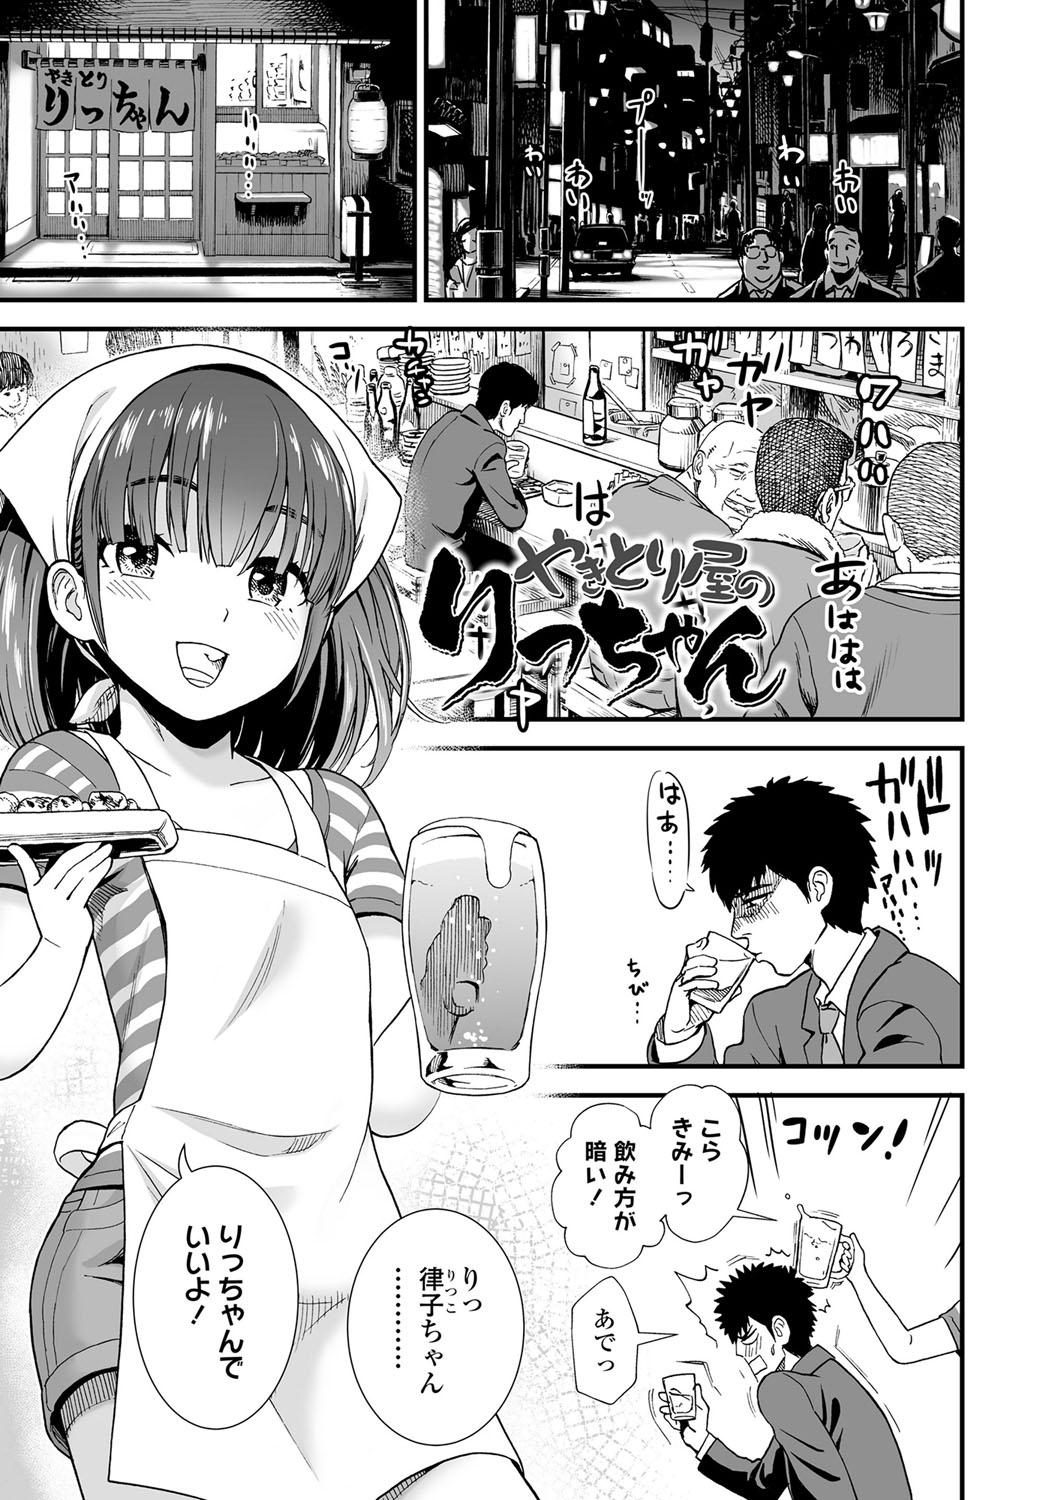 Teenfuns Ore wa Kuzu dakara koso Sukuwareru Kenri ga Aru! Body - Page 6